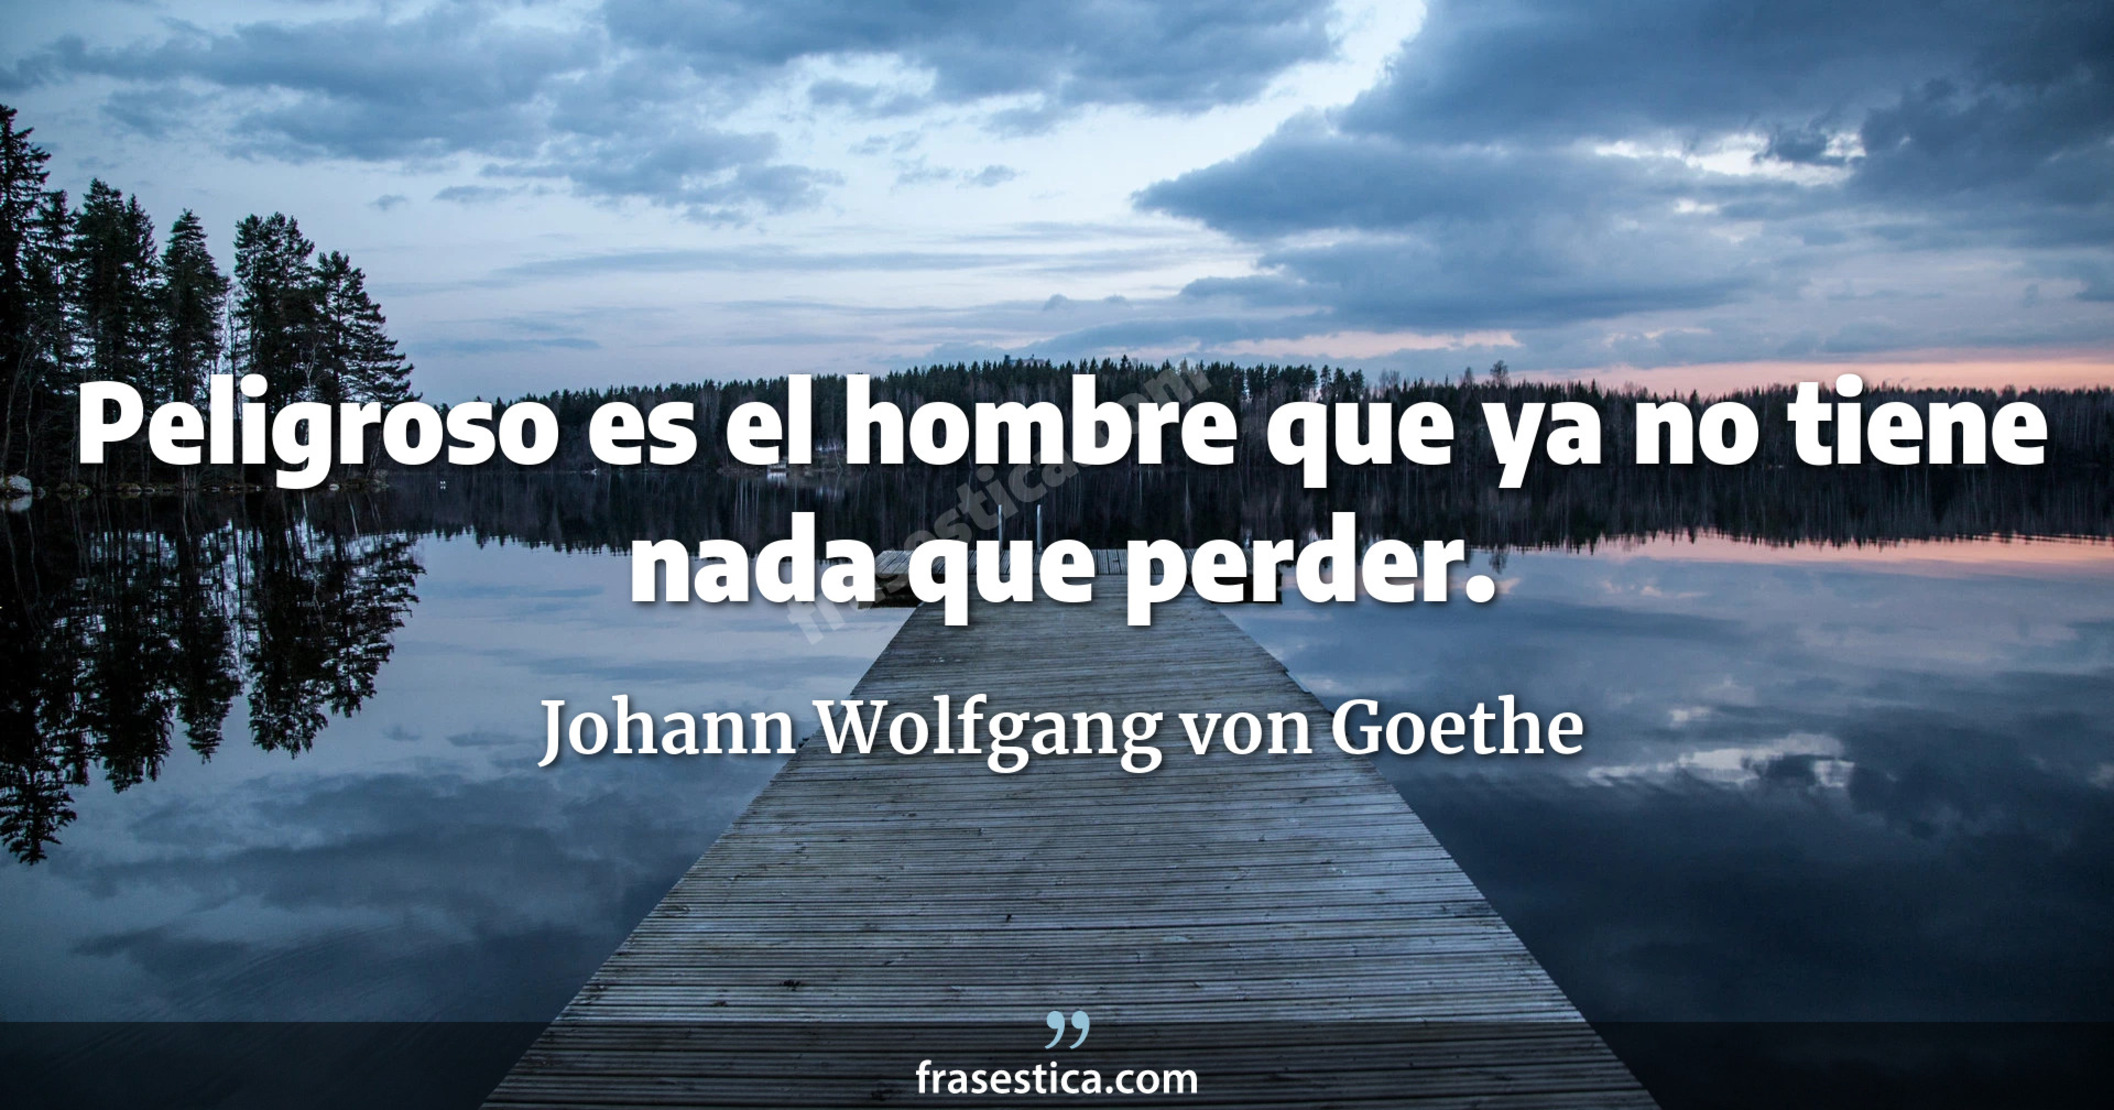 Peligroso es el hombre que ya no tiene nada que perder. - Johann Wolfgang von Goethe